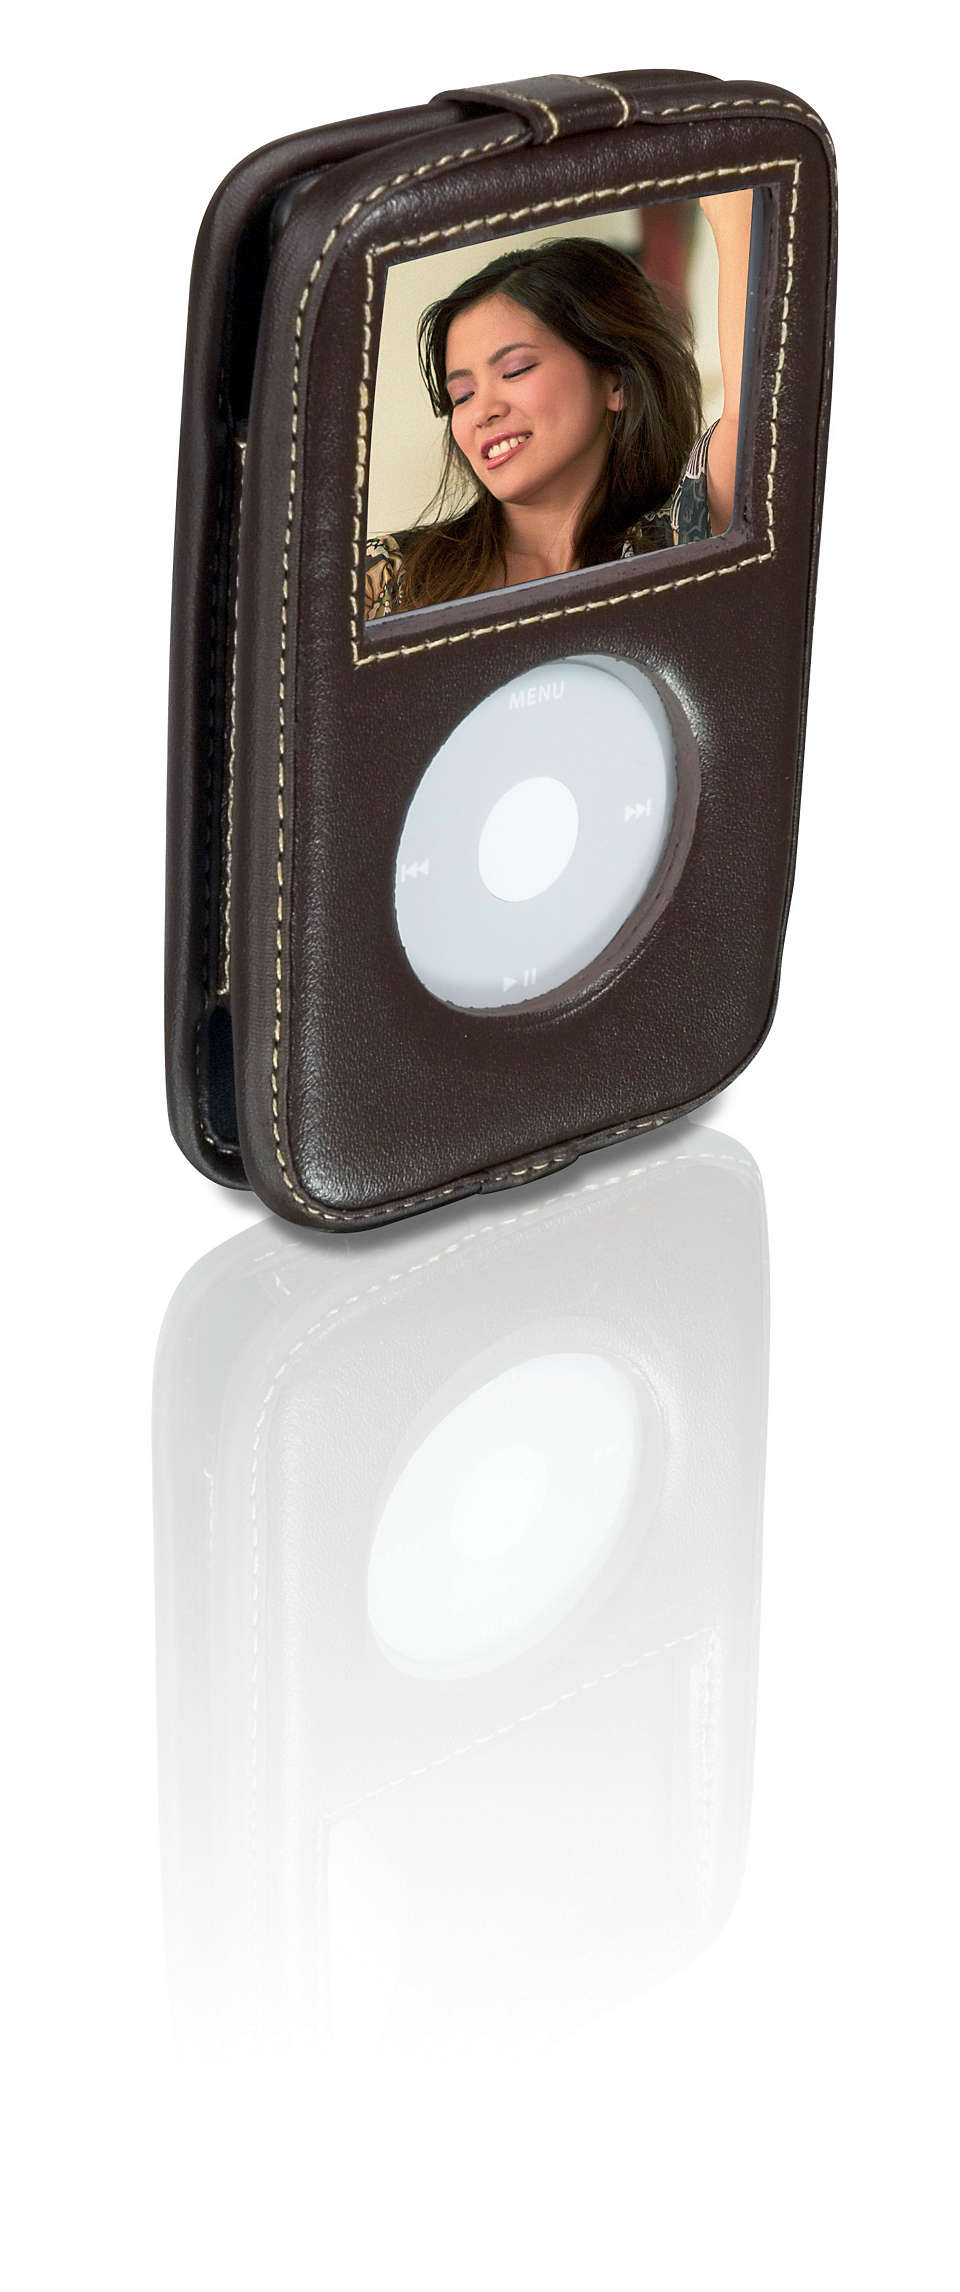 Ochrana zařízení iPod v osobitém stylu